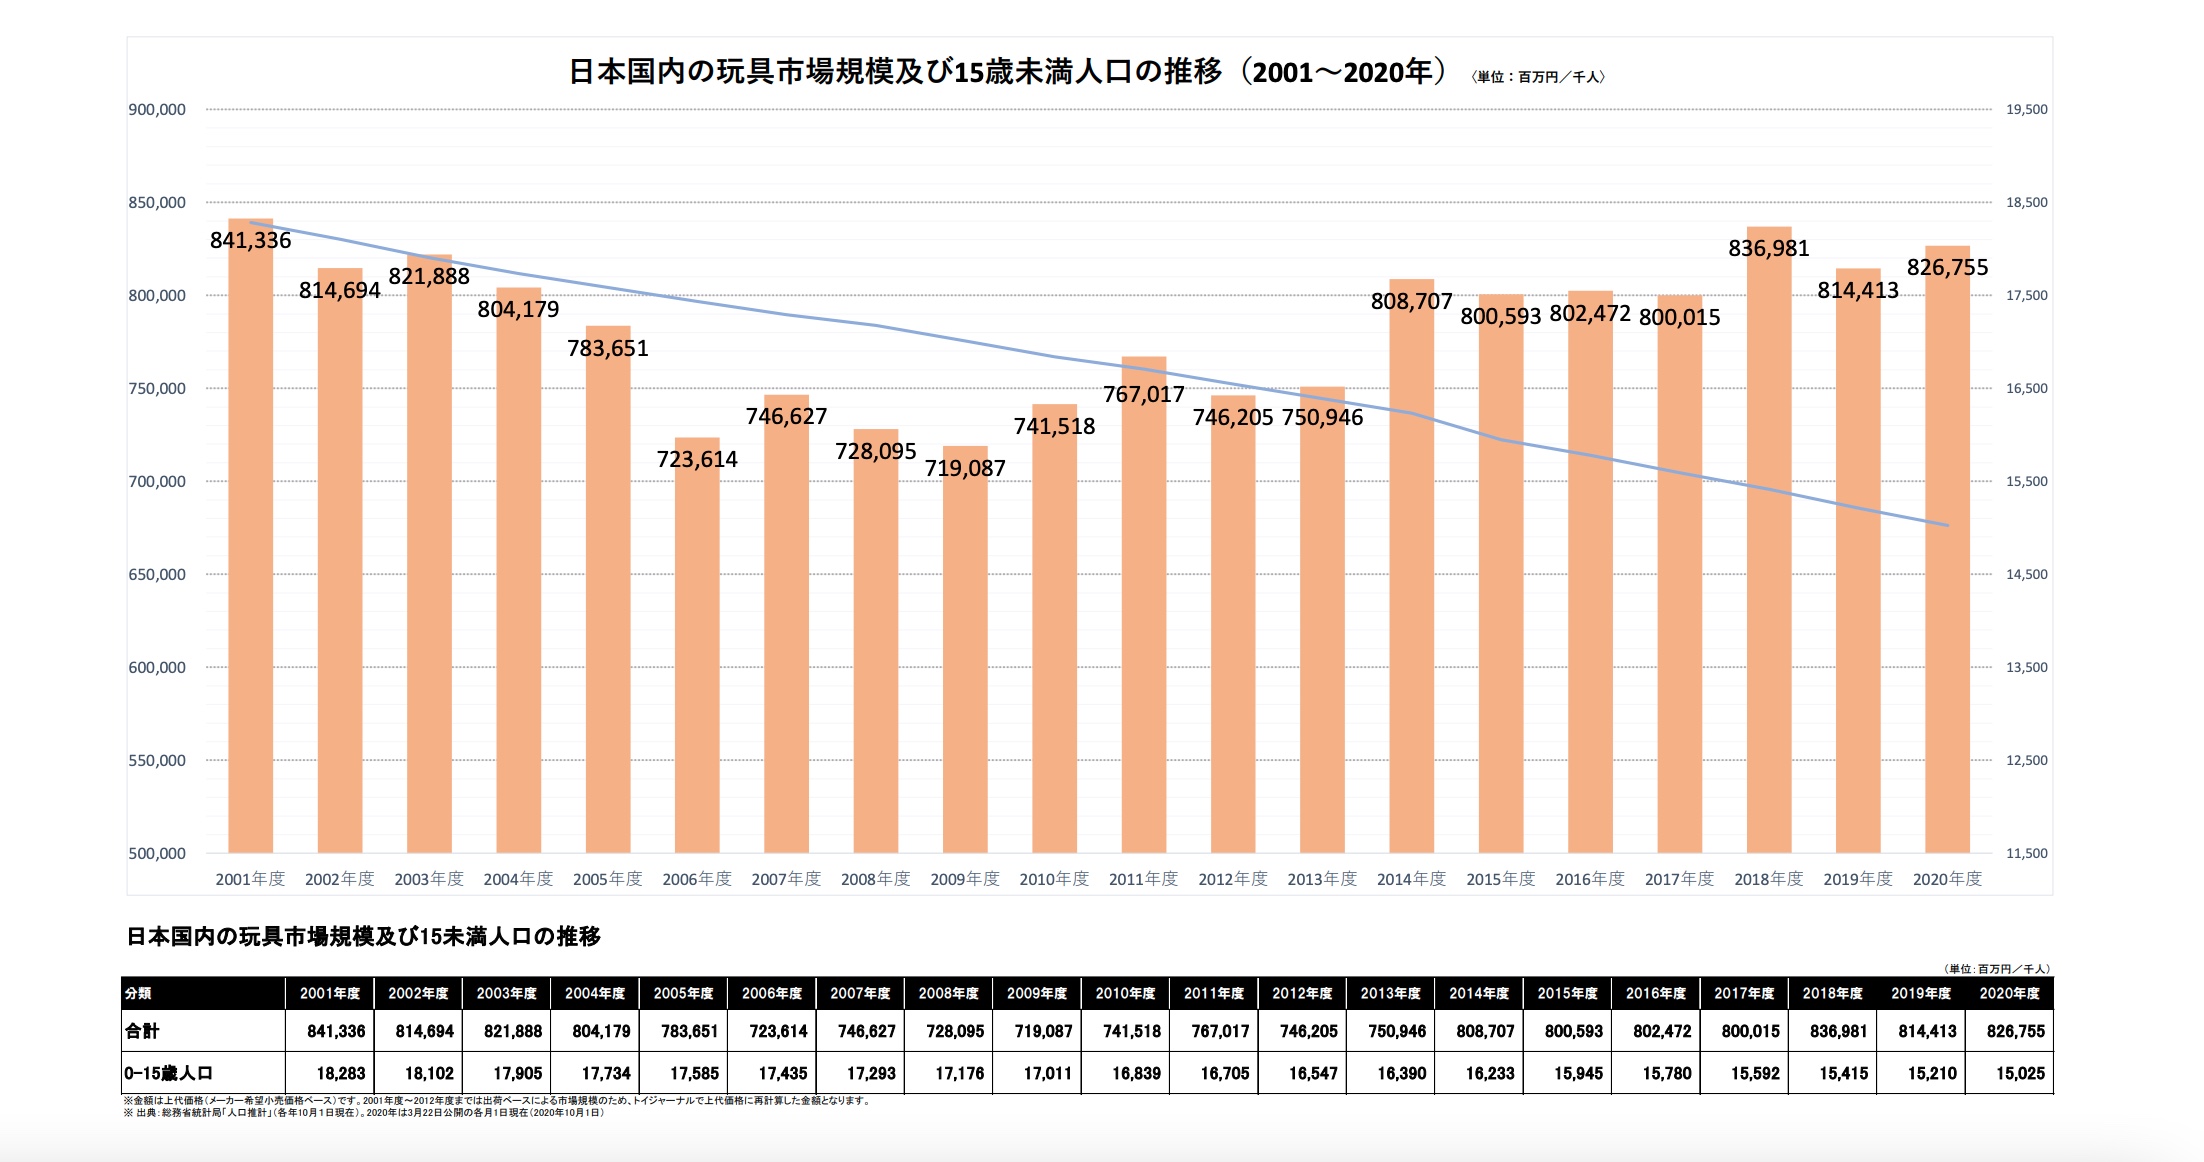 日本国内の玩具市場規模及び15歳未満人口の推移に関するデータ（2001〜2020年）（参考：https://www.toys.or.jp/toukei_siryou_data.html）